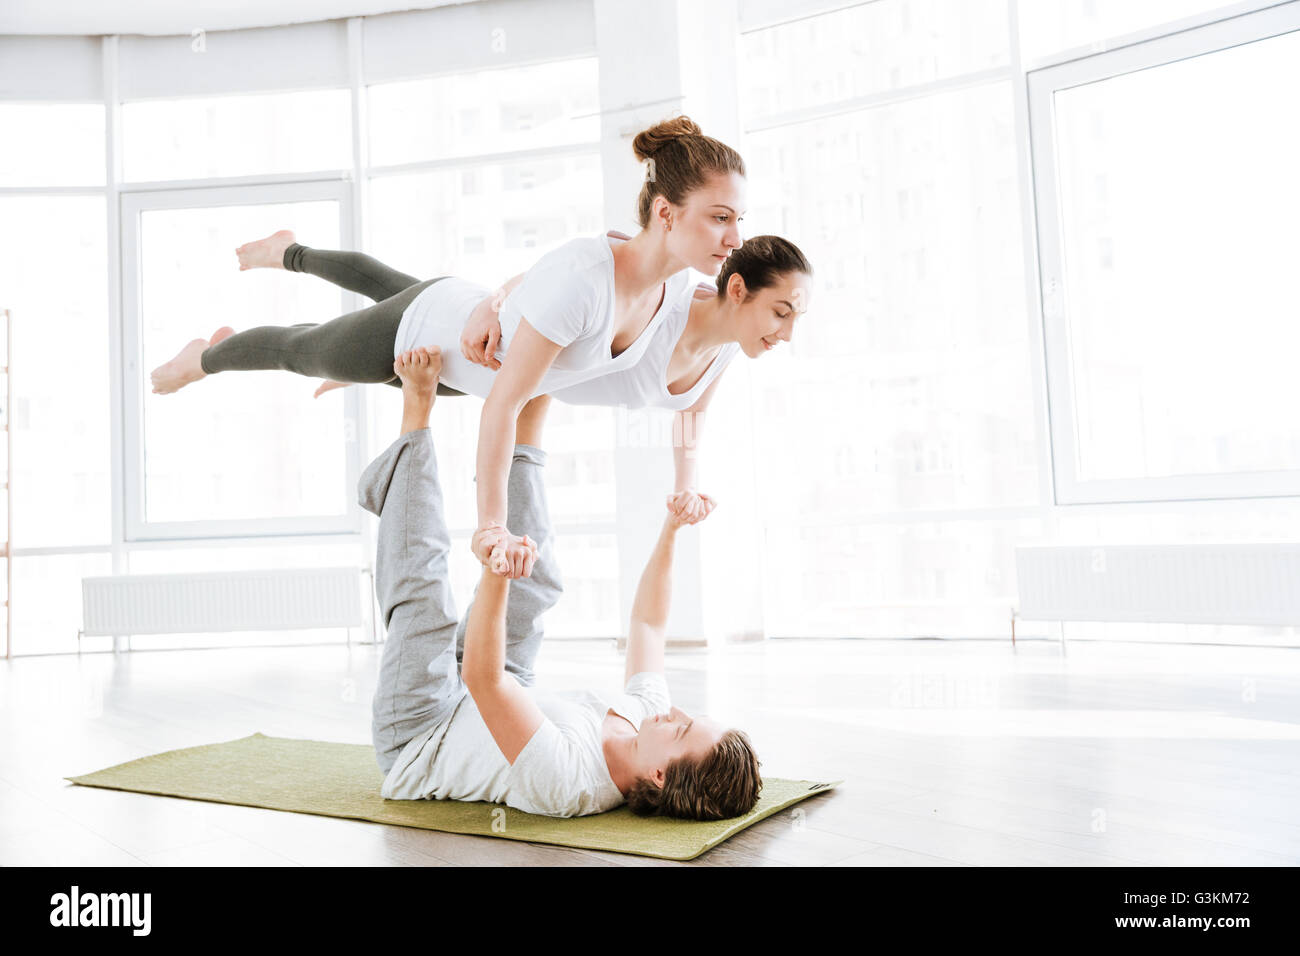 Groupe de deux jeunes femmes et l'équilibre entre l'homme et de faire de l'acro yoga Yoga en studio Banque D'Images